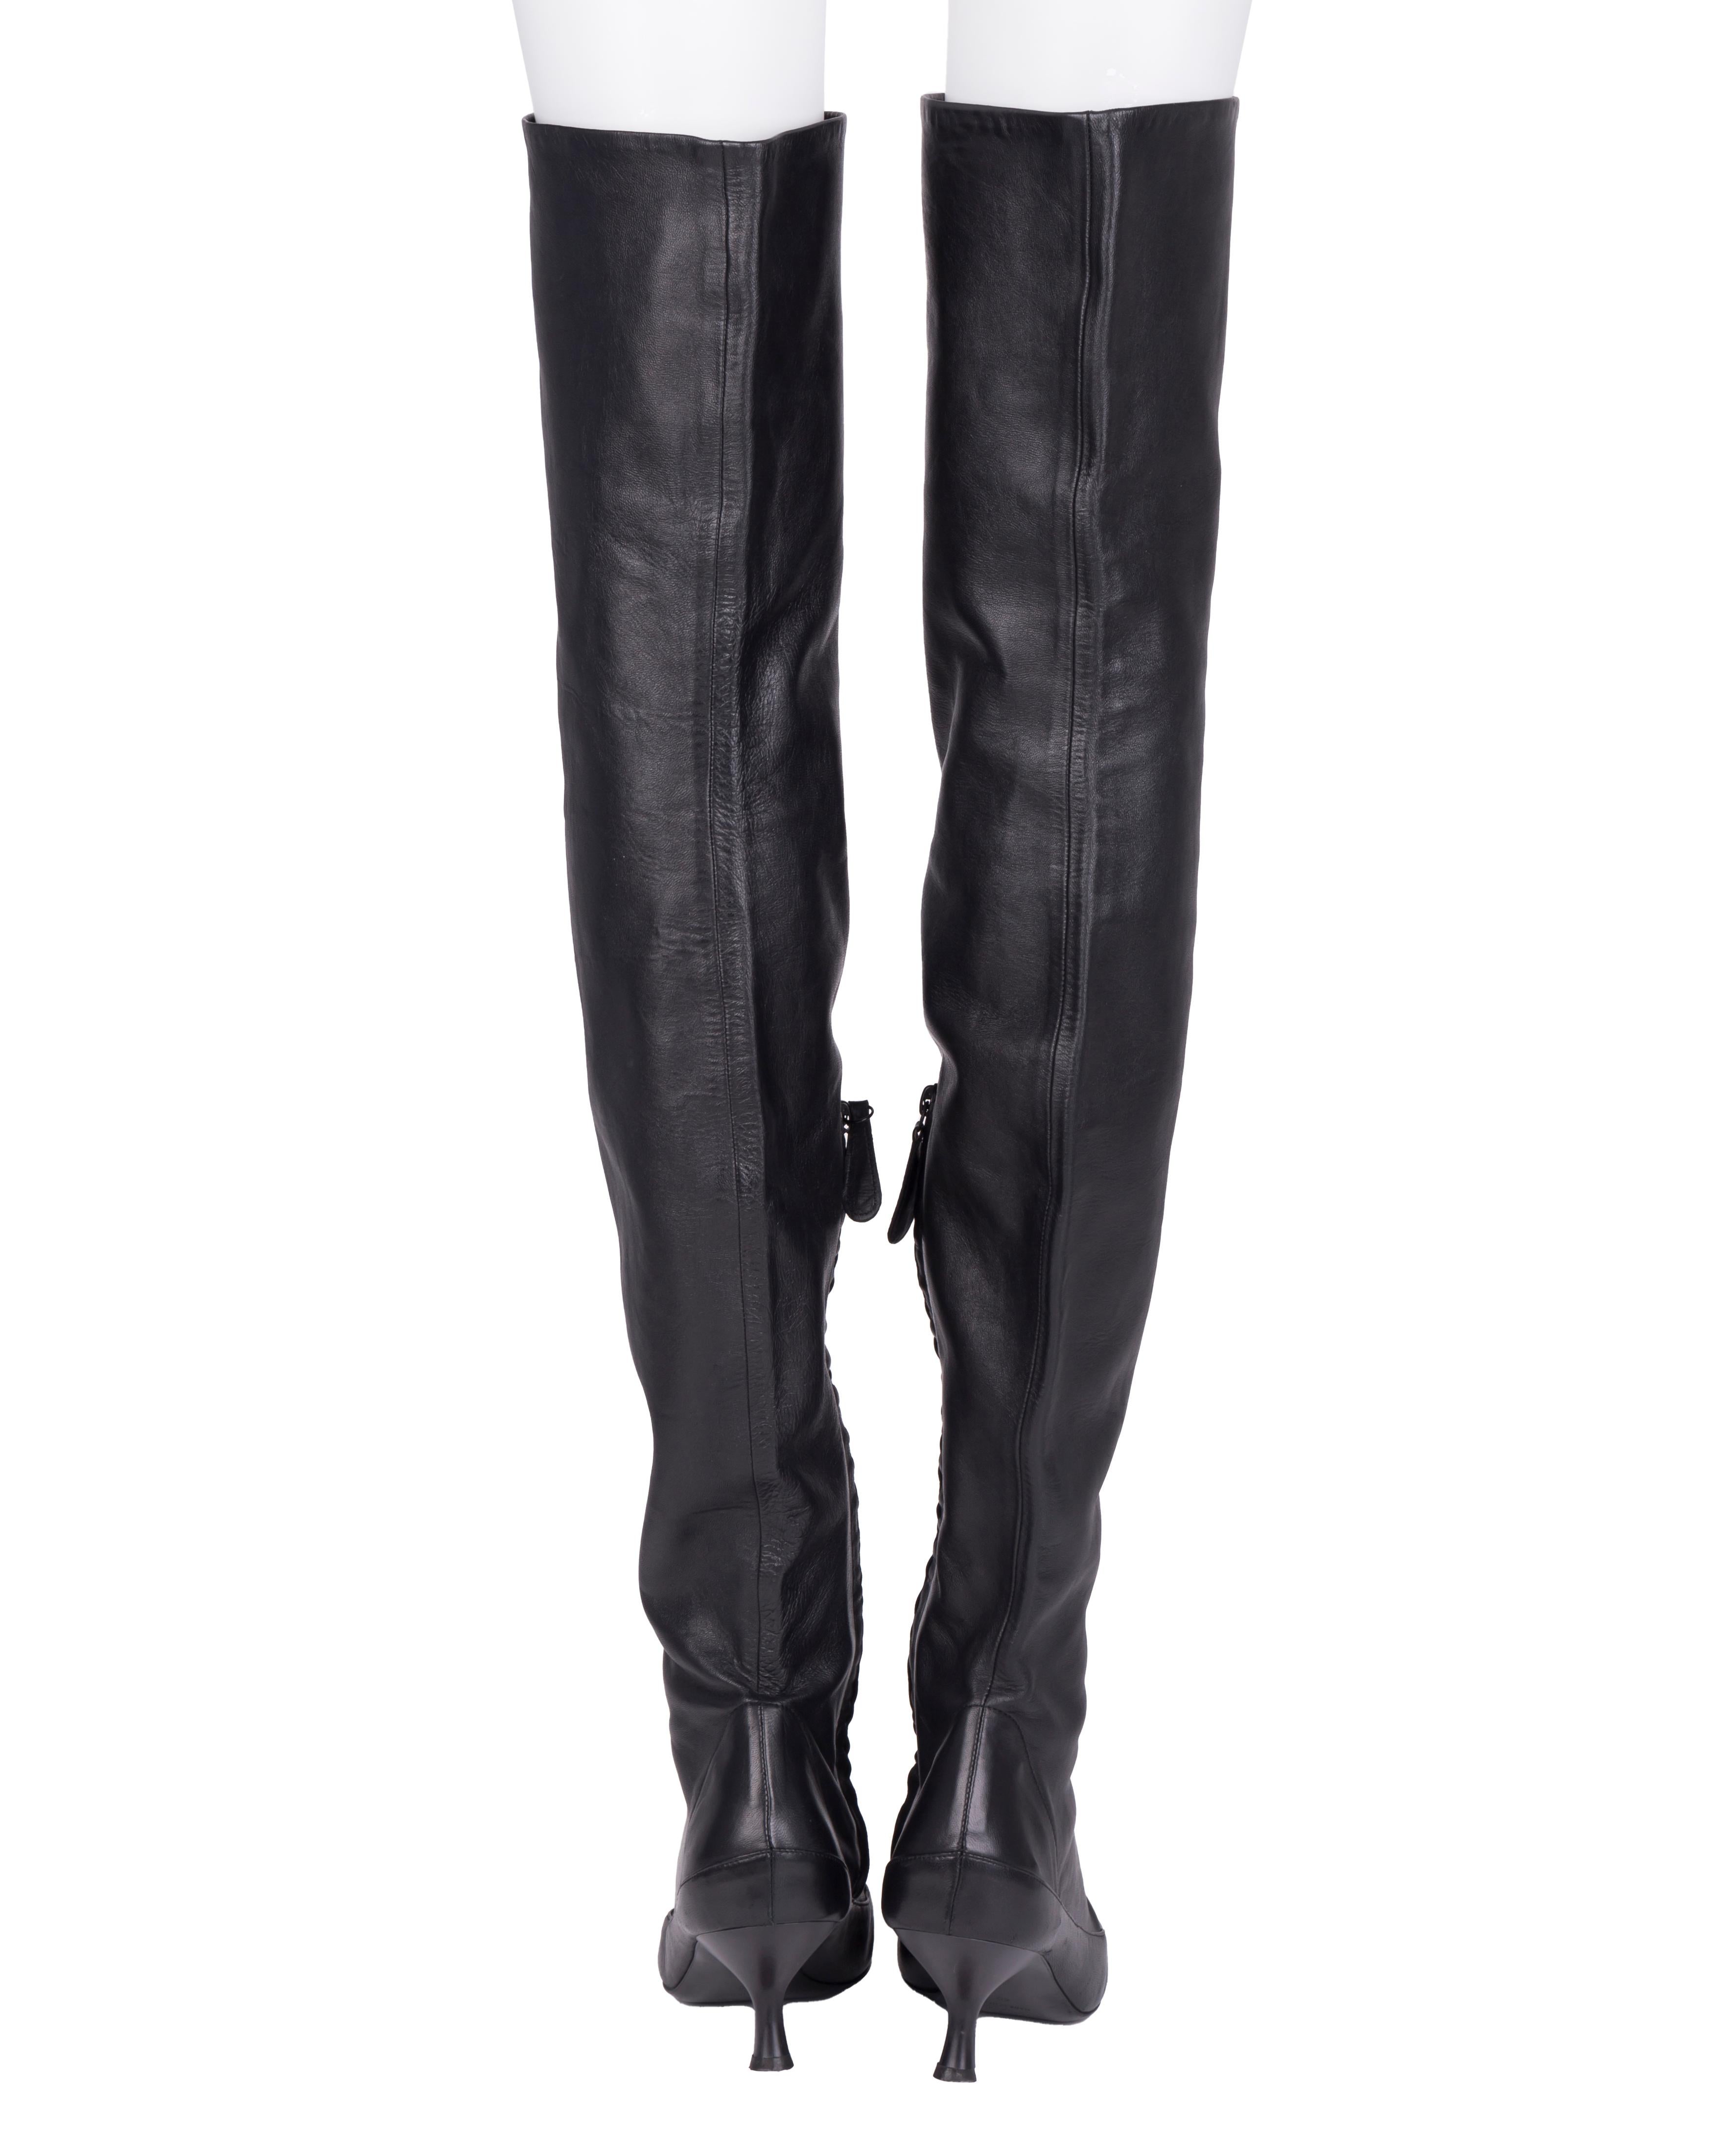 - Black thigh high soft leather boots
- Kitten heel
- Size EU 40
